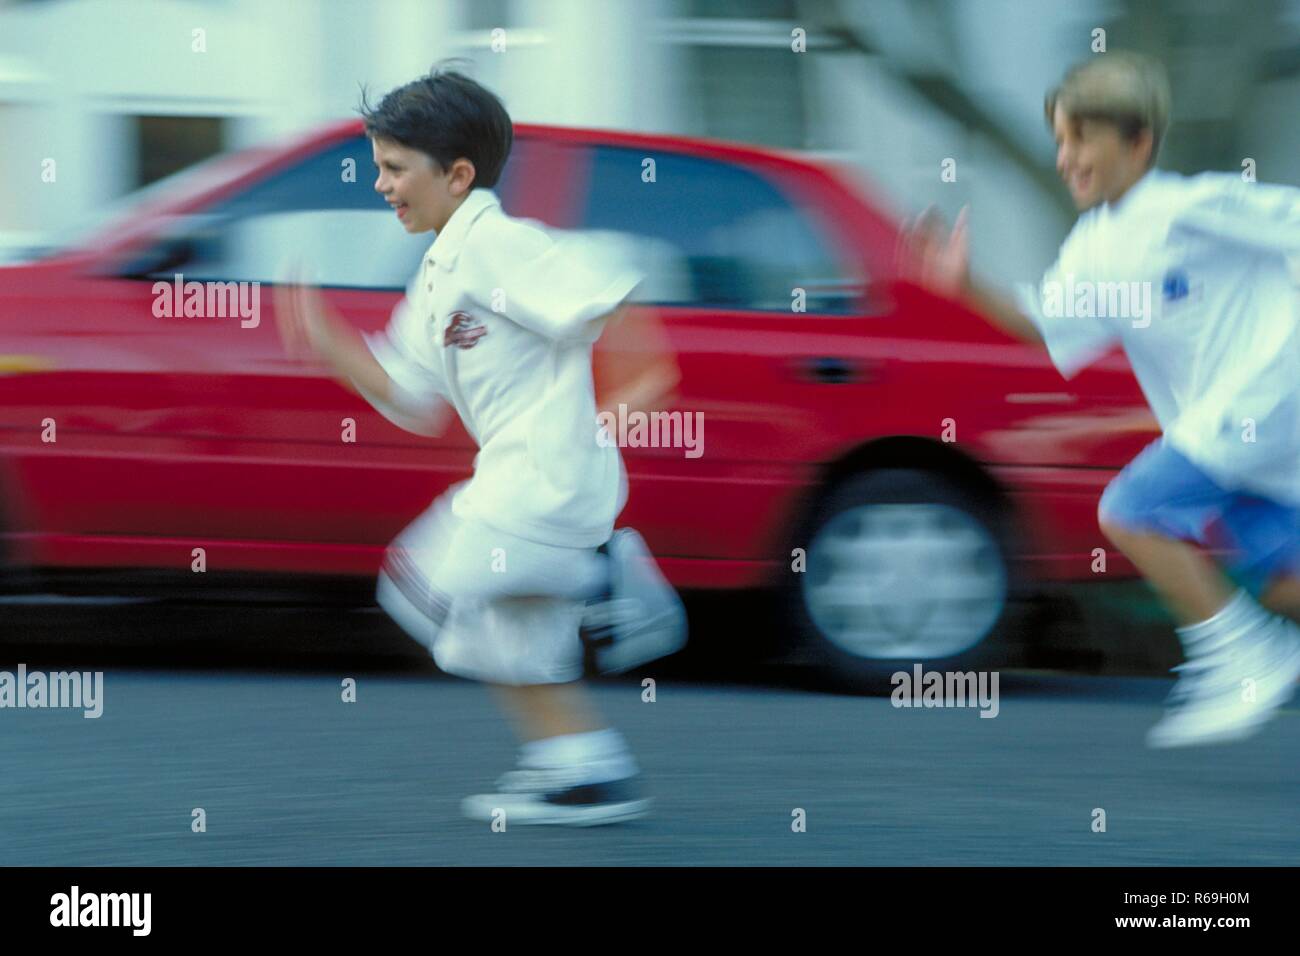 Ritratto, Ganzfigur, zwei 7-8 Jahre alte Jungen bekleidet mit weissen T-Shirts und Shorts laufen un einem roten Auto vorbei die Strasse entlang Foto Stock